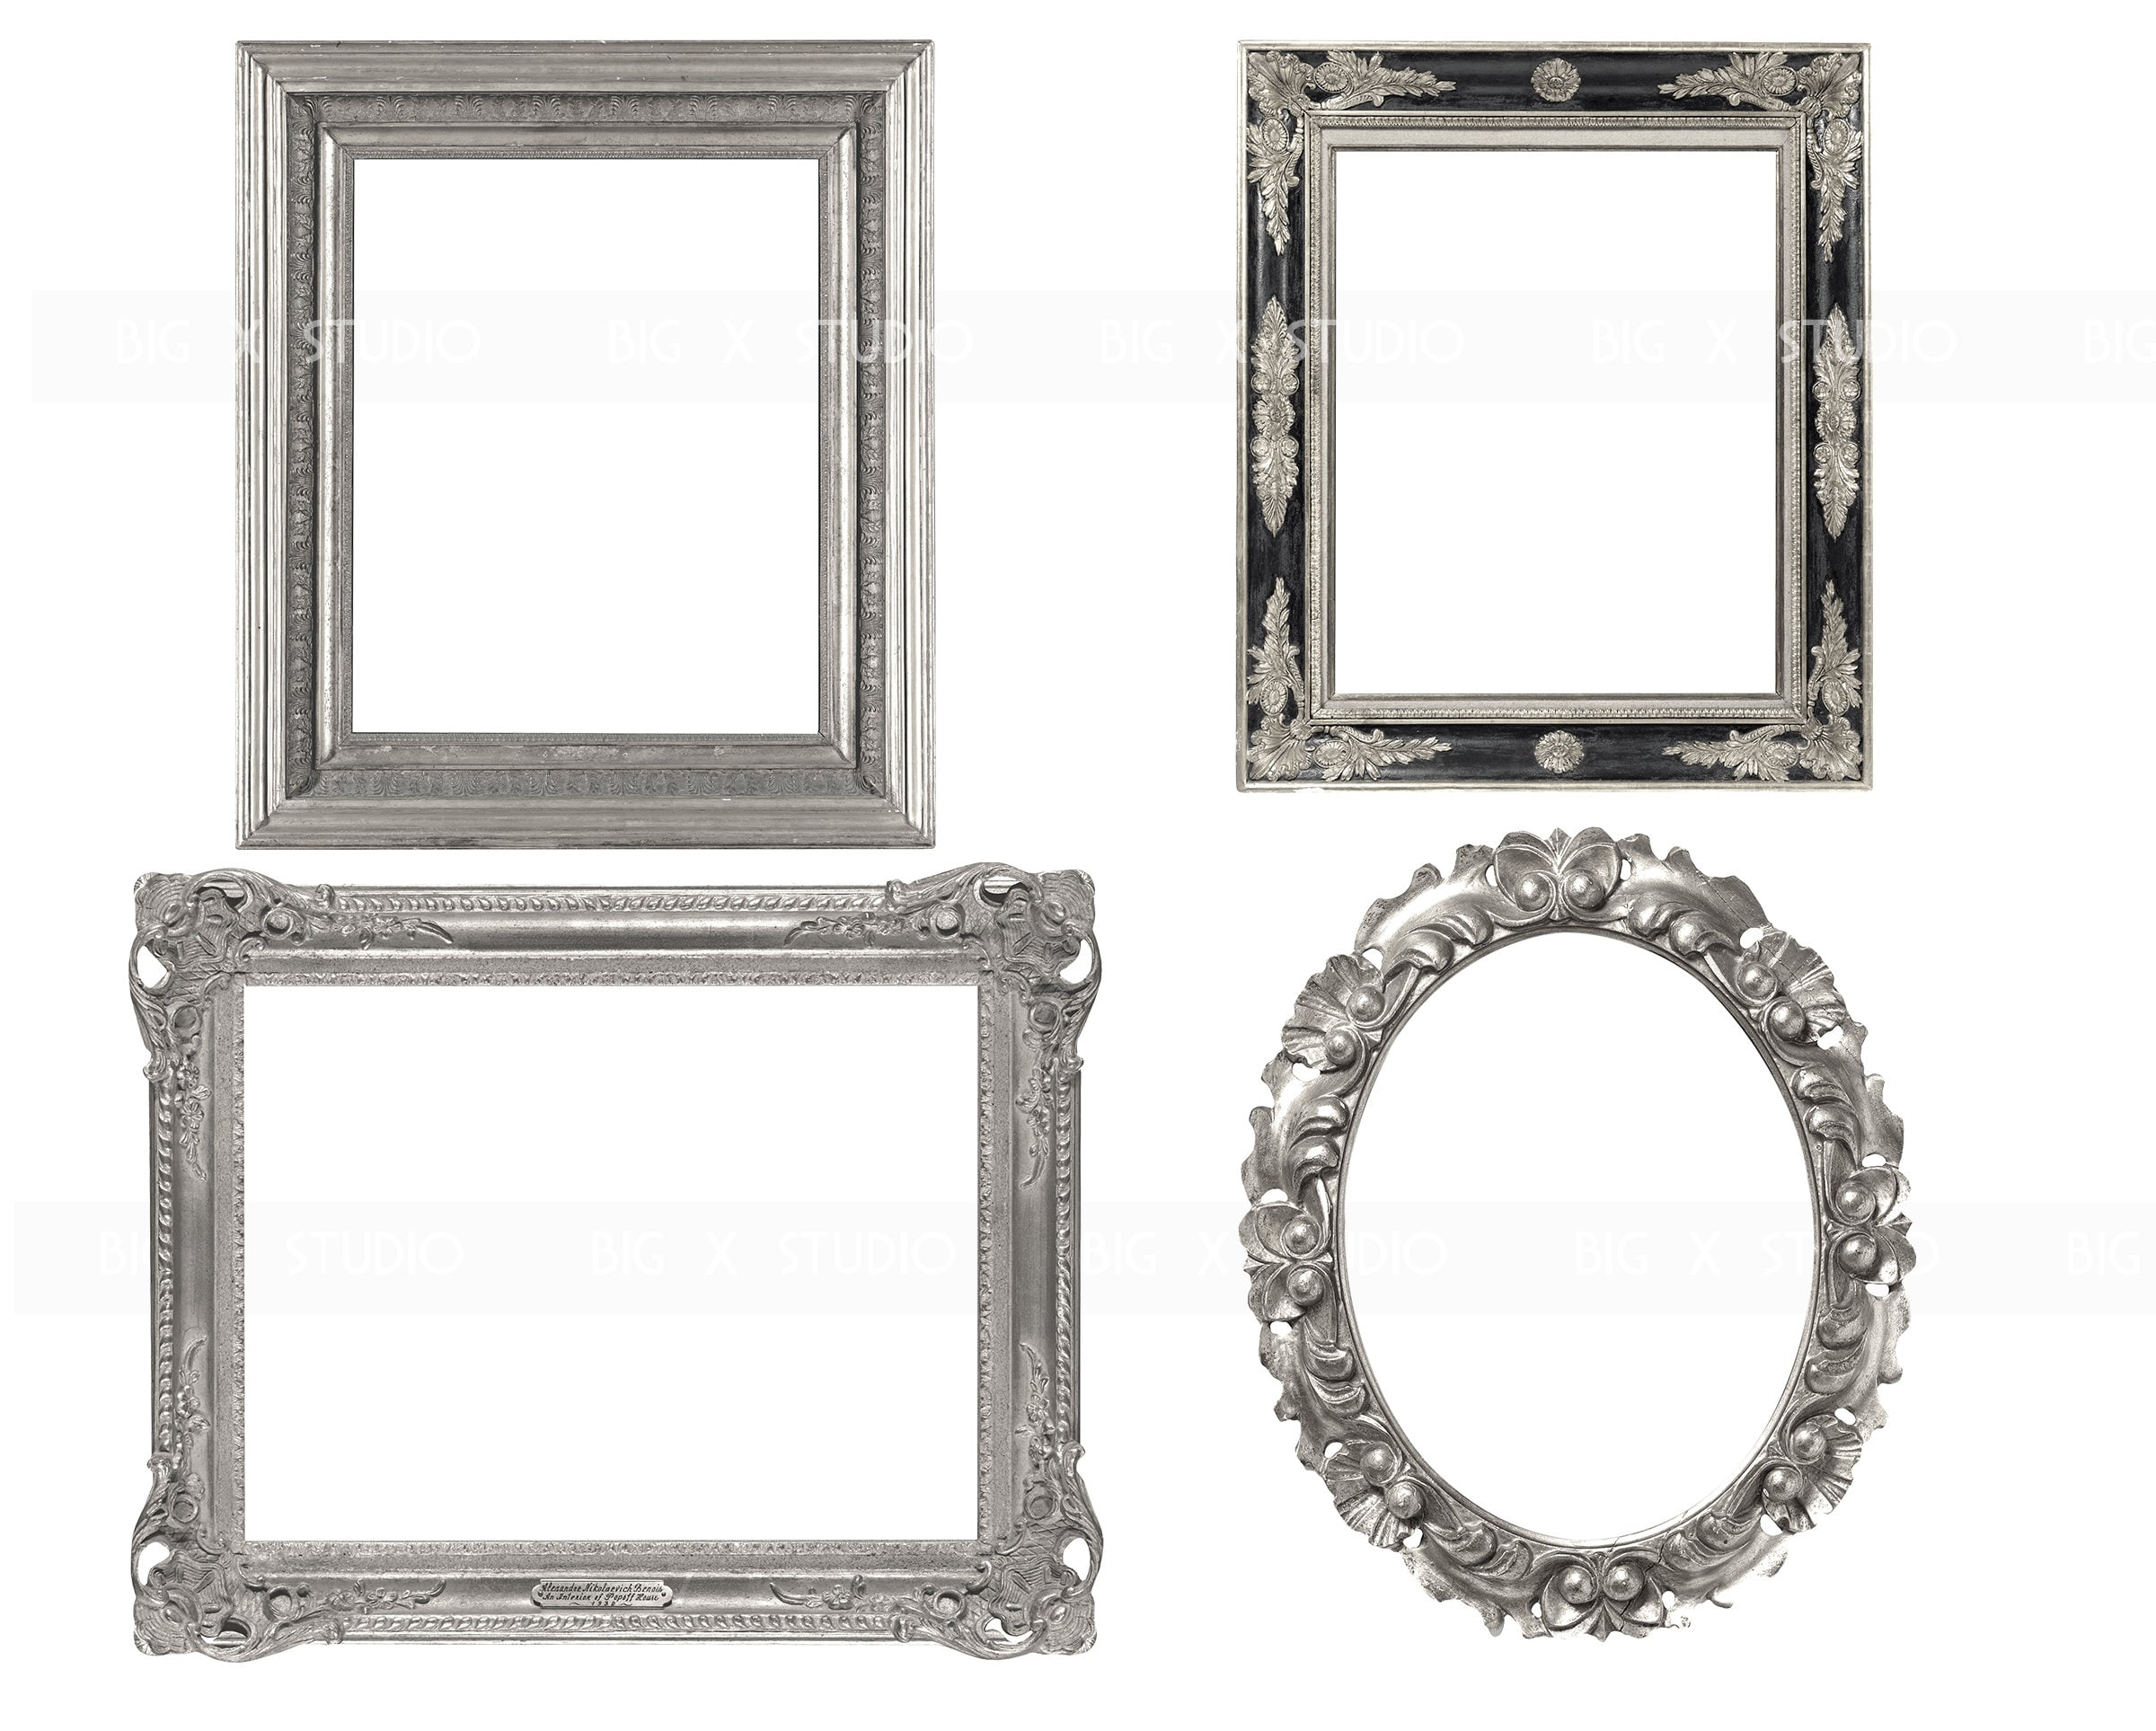 20 High Resolution Ornate Silver Frame Images / Digital | Etsy